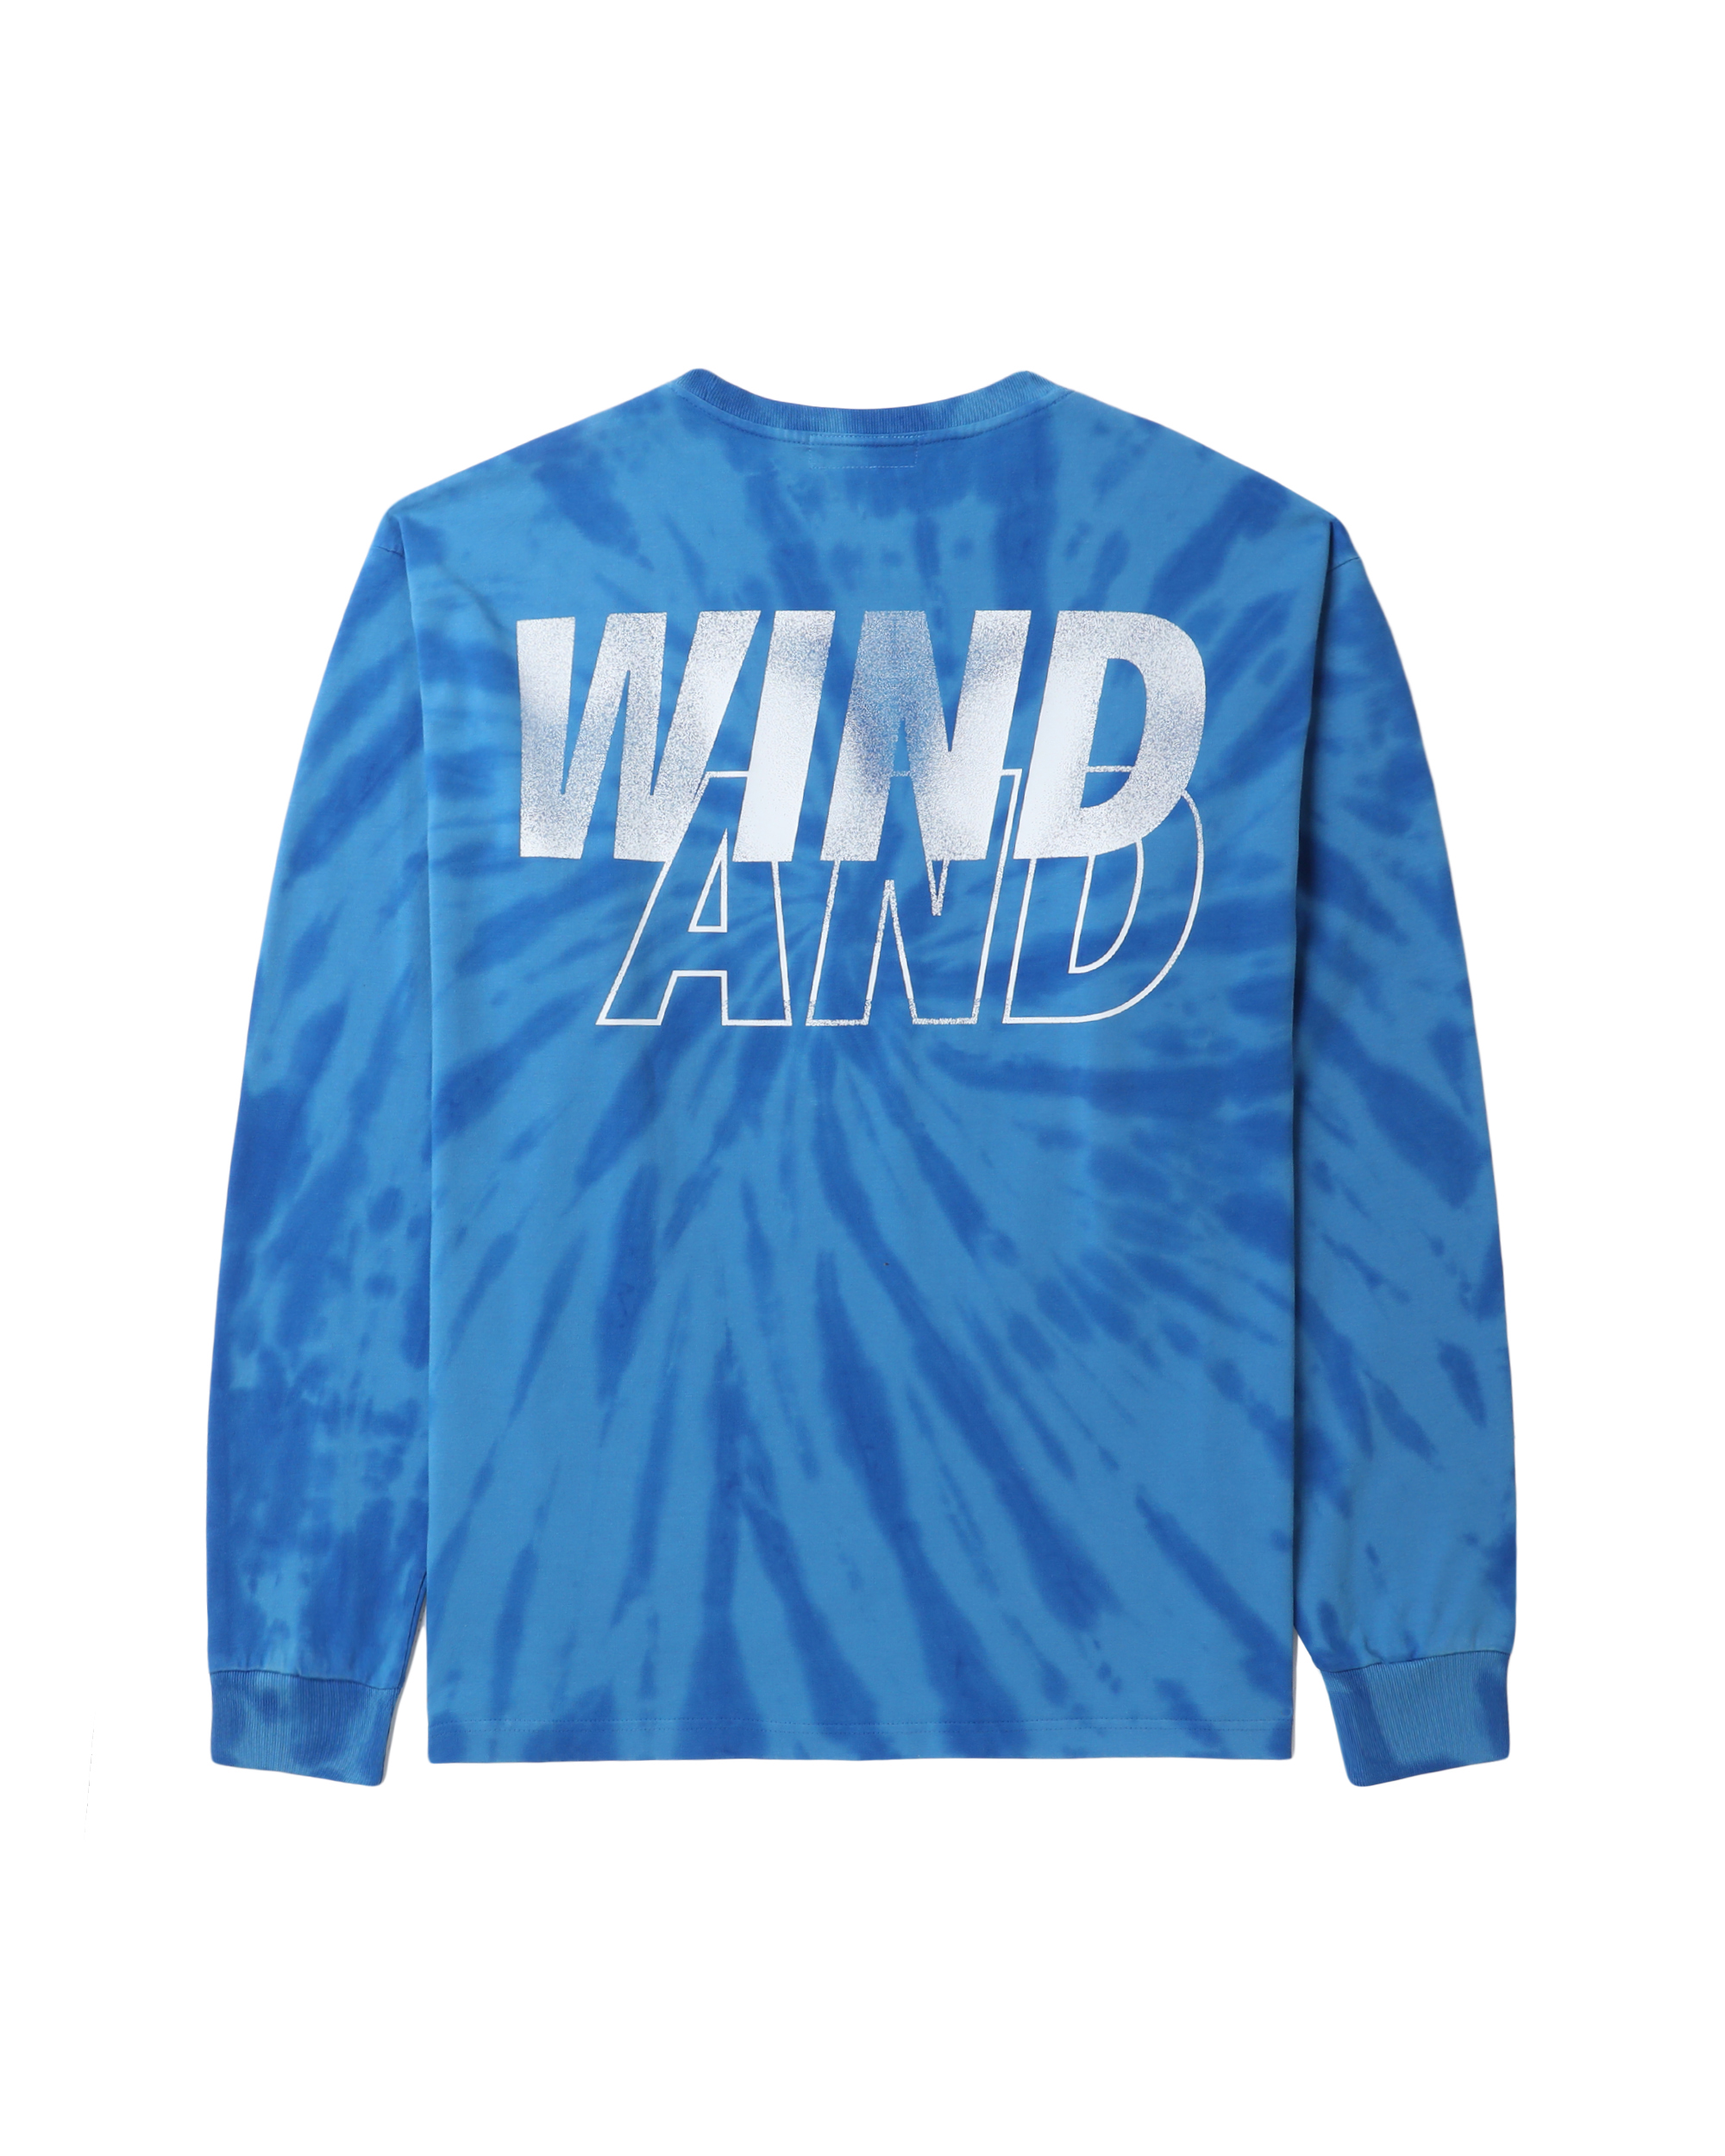 【希少XLサイズ】wind and sea logo tee